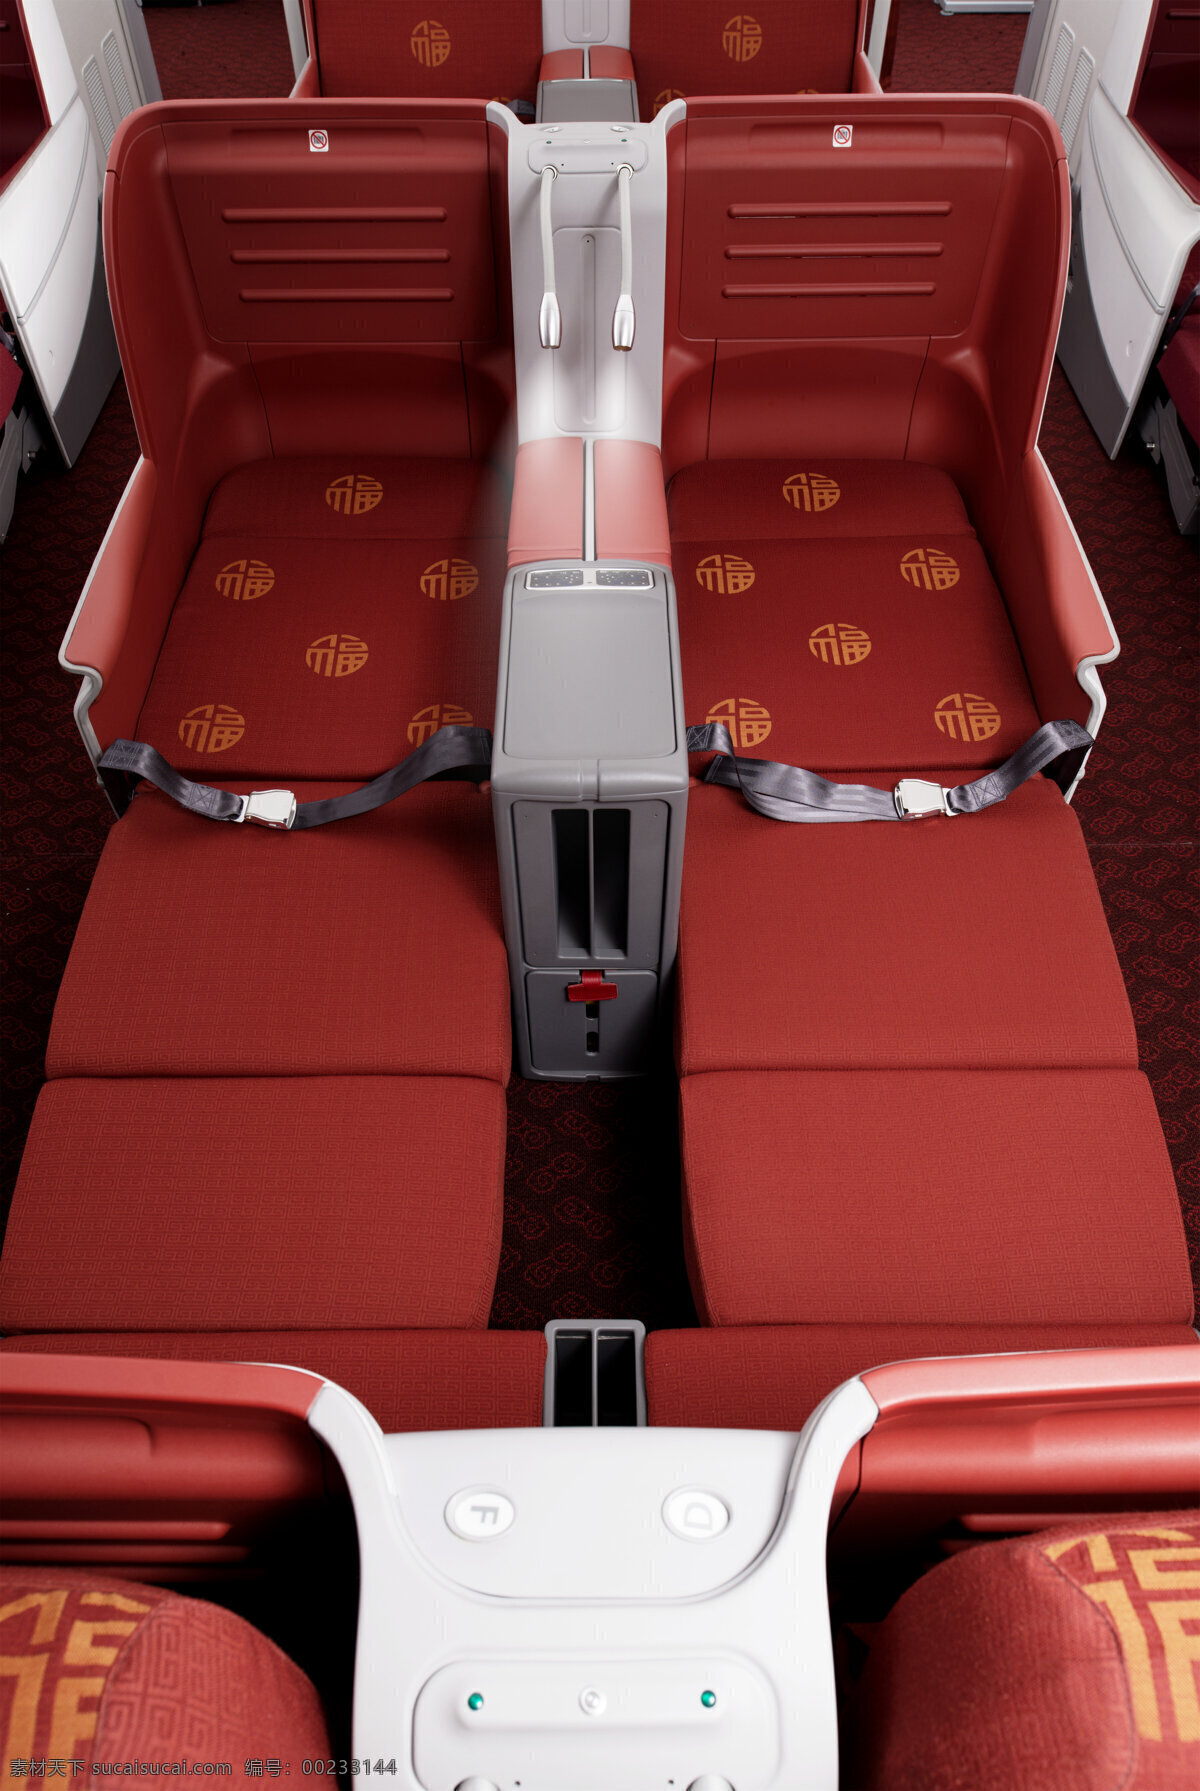 787飞机 实拍 180度座椅 飞机舱 飞机 飞机内部 中国航空 中国航空印刷 飞机图片 高清图片 现代科技 交通工具